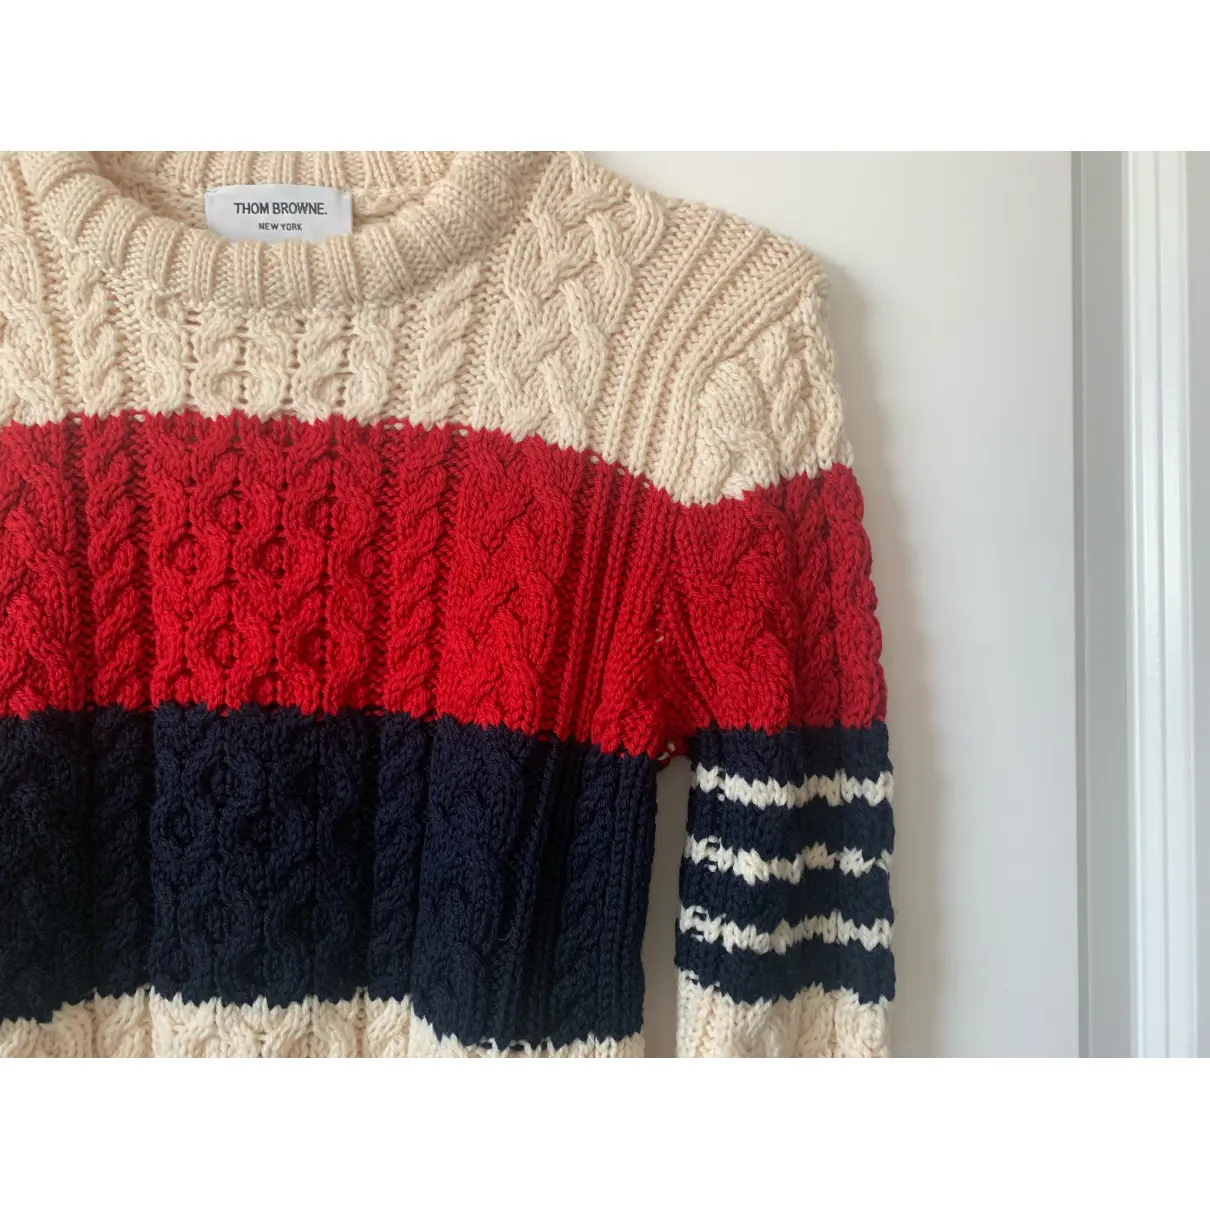 Wool sweatshirt Thom Browne